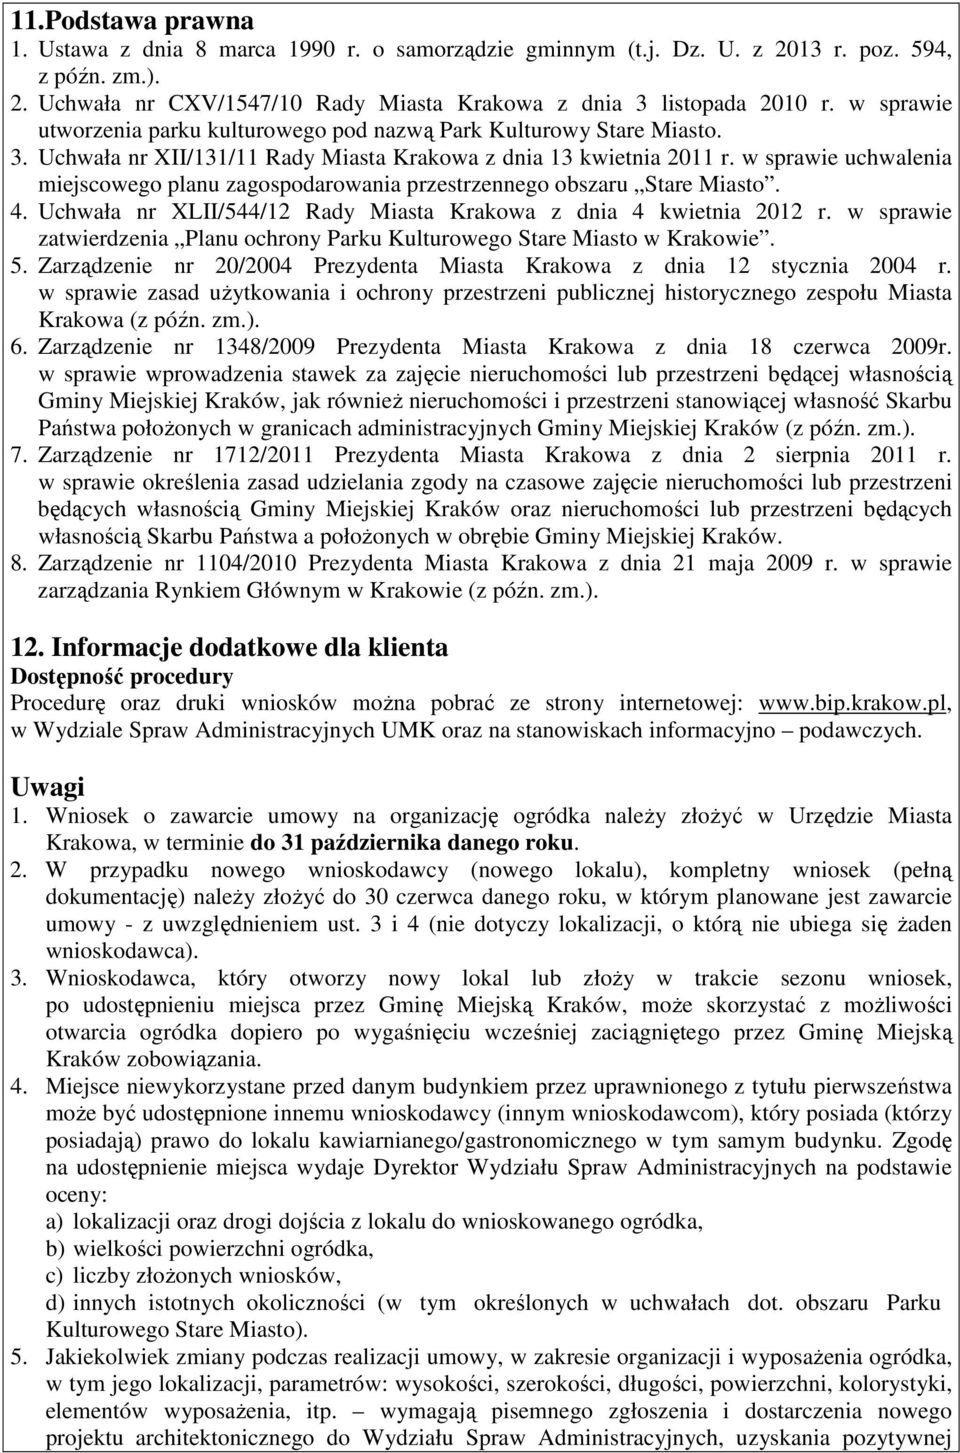 w sprawie uchwalenia miejscowego planu zagospodarowania przestrzennego obszaru Stare Miasto. 4. Uchwała nr XLII/544/12 Rady Miasta Krakowa z dnia 4 kwietnia 2012 r.